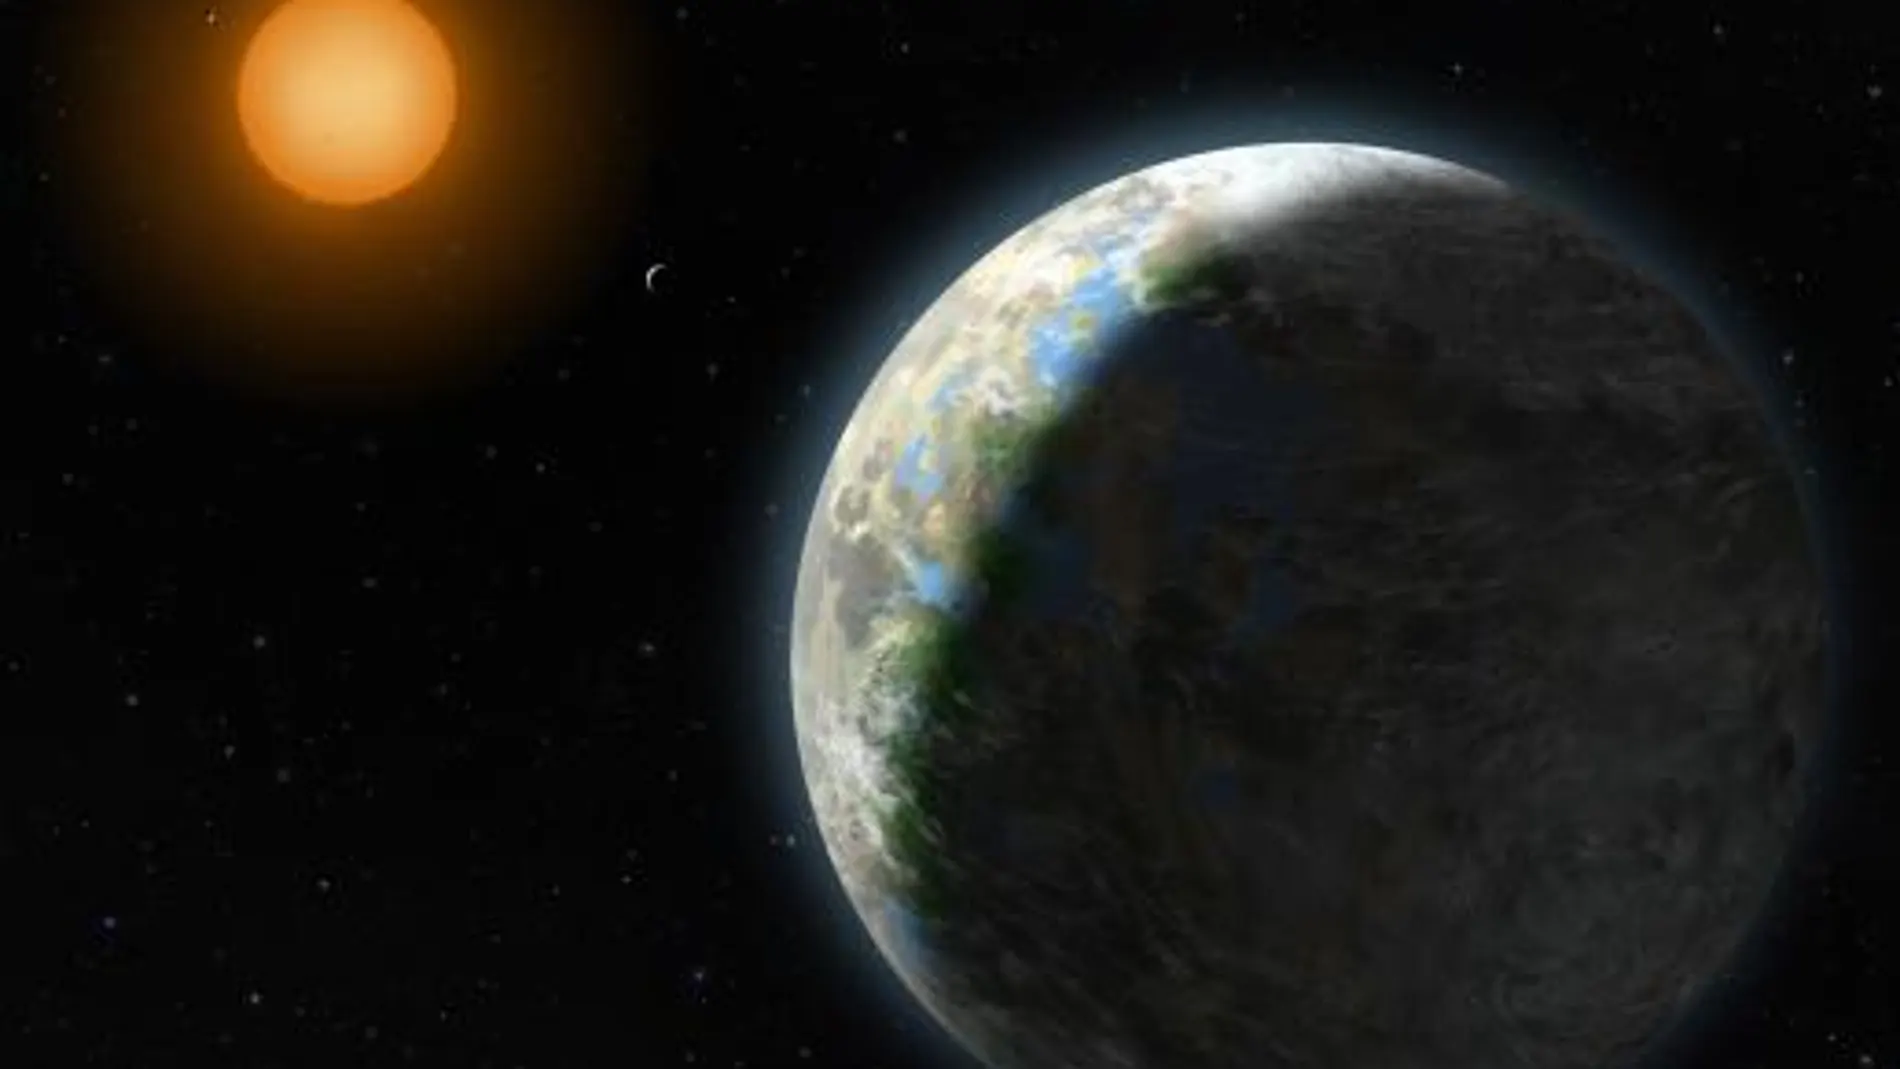 KOI-456.04 es el nombre del planeta "imagen" de la Tierra